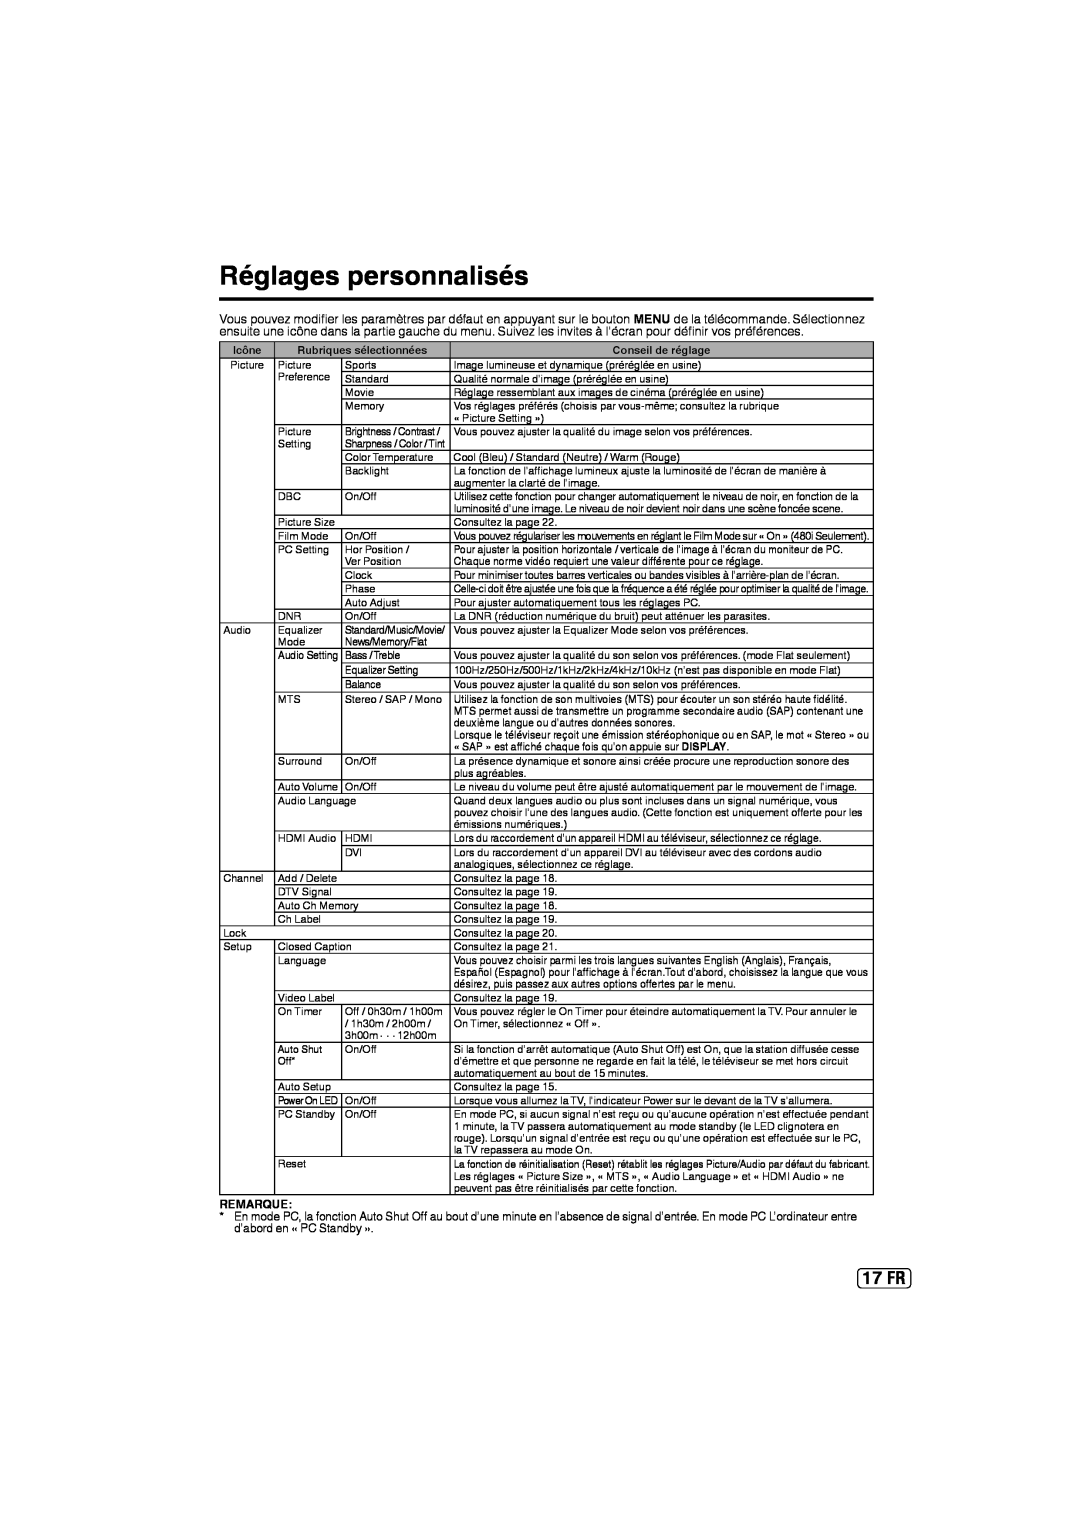 Sansui SLED2237 owner manual Réglages personnalisés, 17 FR, Remarque, Icône, Rubriques sélectionnées, Conseil de réglage 